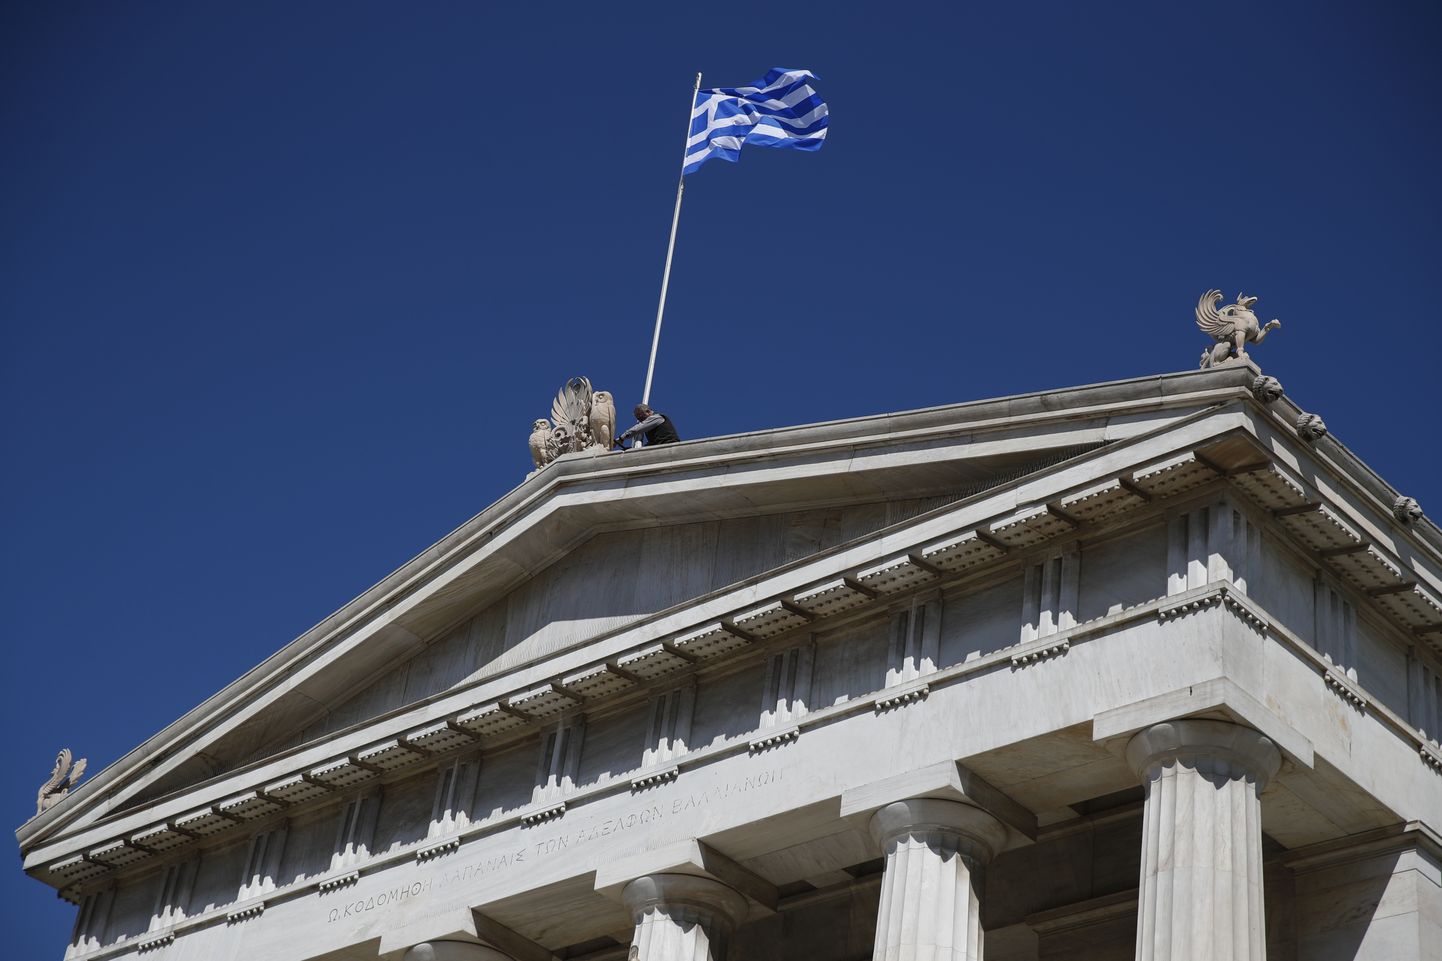 Kreeka valitsus kavatseb märtsi lõpuks tasuda viimase osa riigi võlast Rahvusvahelisele Valuutafondile